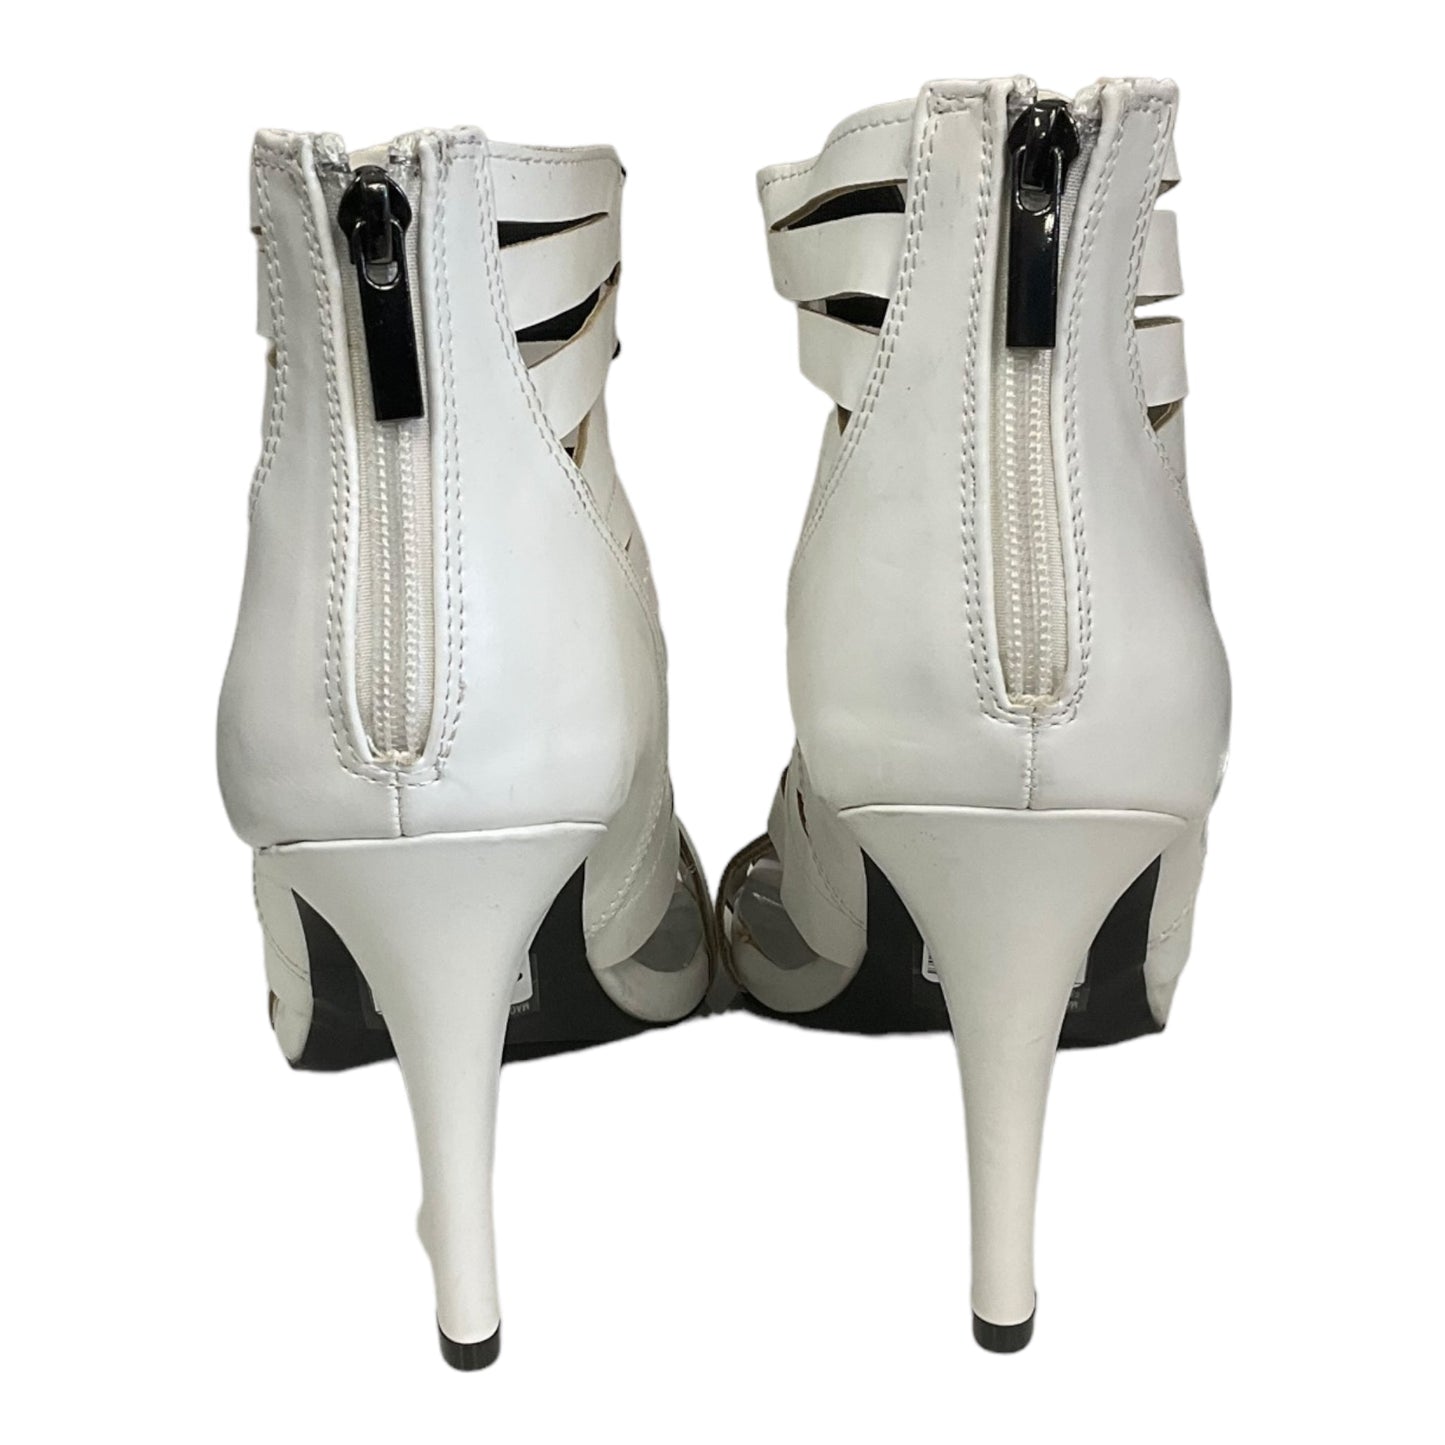 Sandals Heels Stiletto By Ashley Stewart  Size: 11